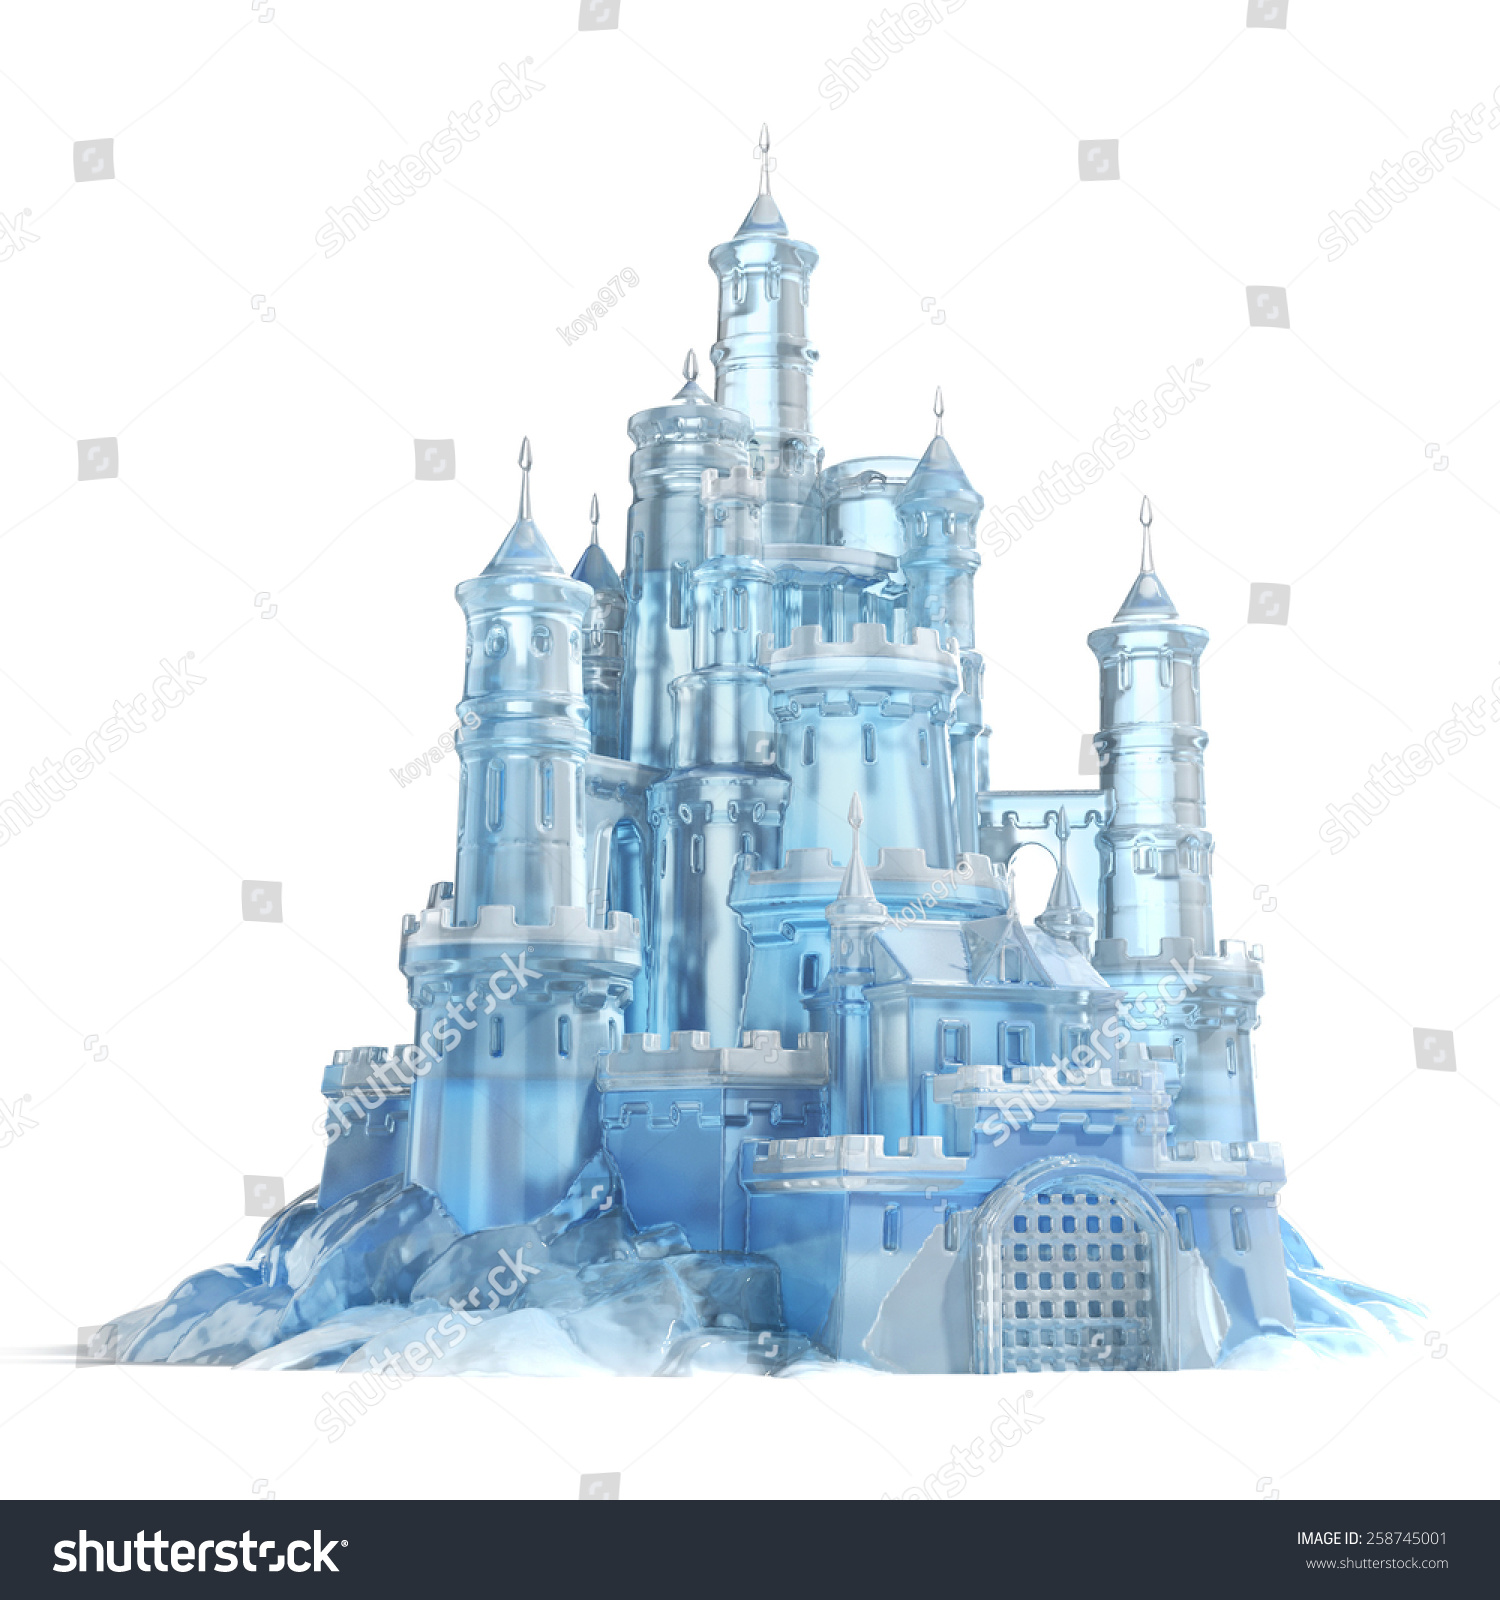 Frozen Ice Castle - Frozen